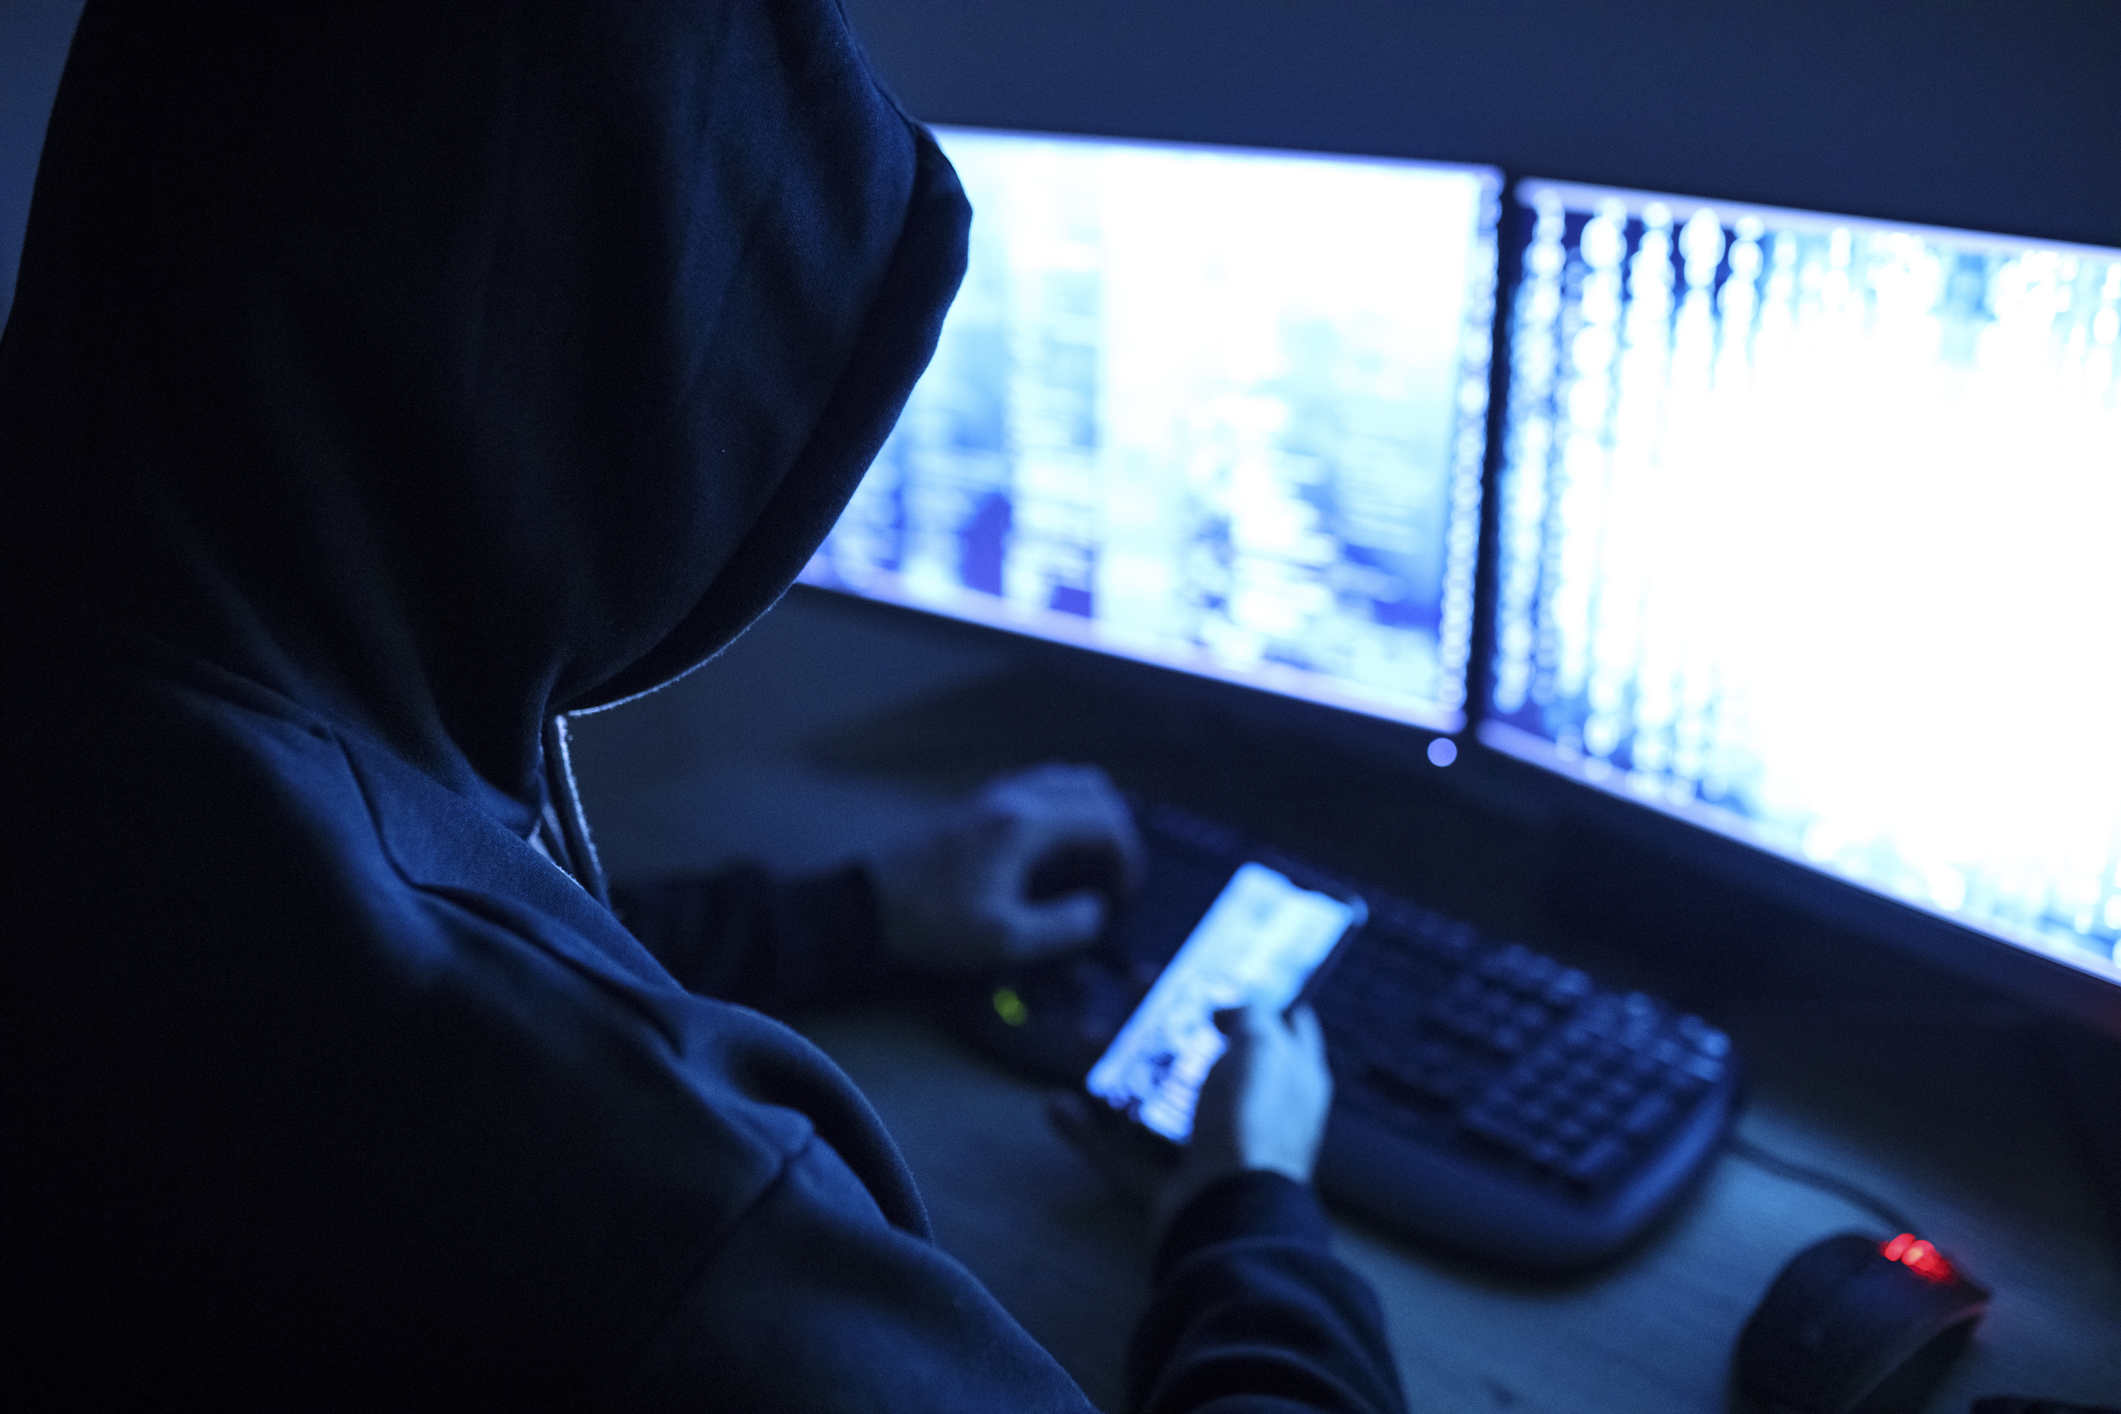 Numele a 6 bănci populare din România sunt folosite ilegal de către hackeri pentru a păcăli clienţii